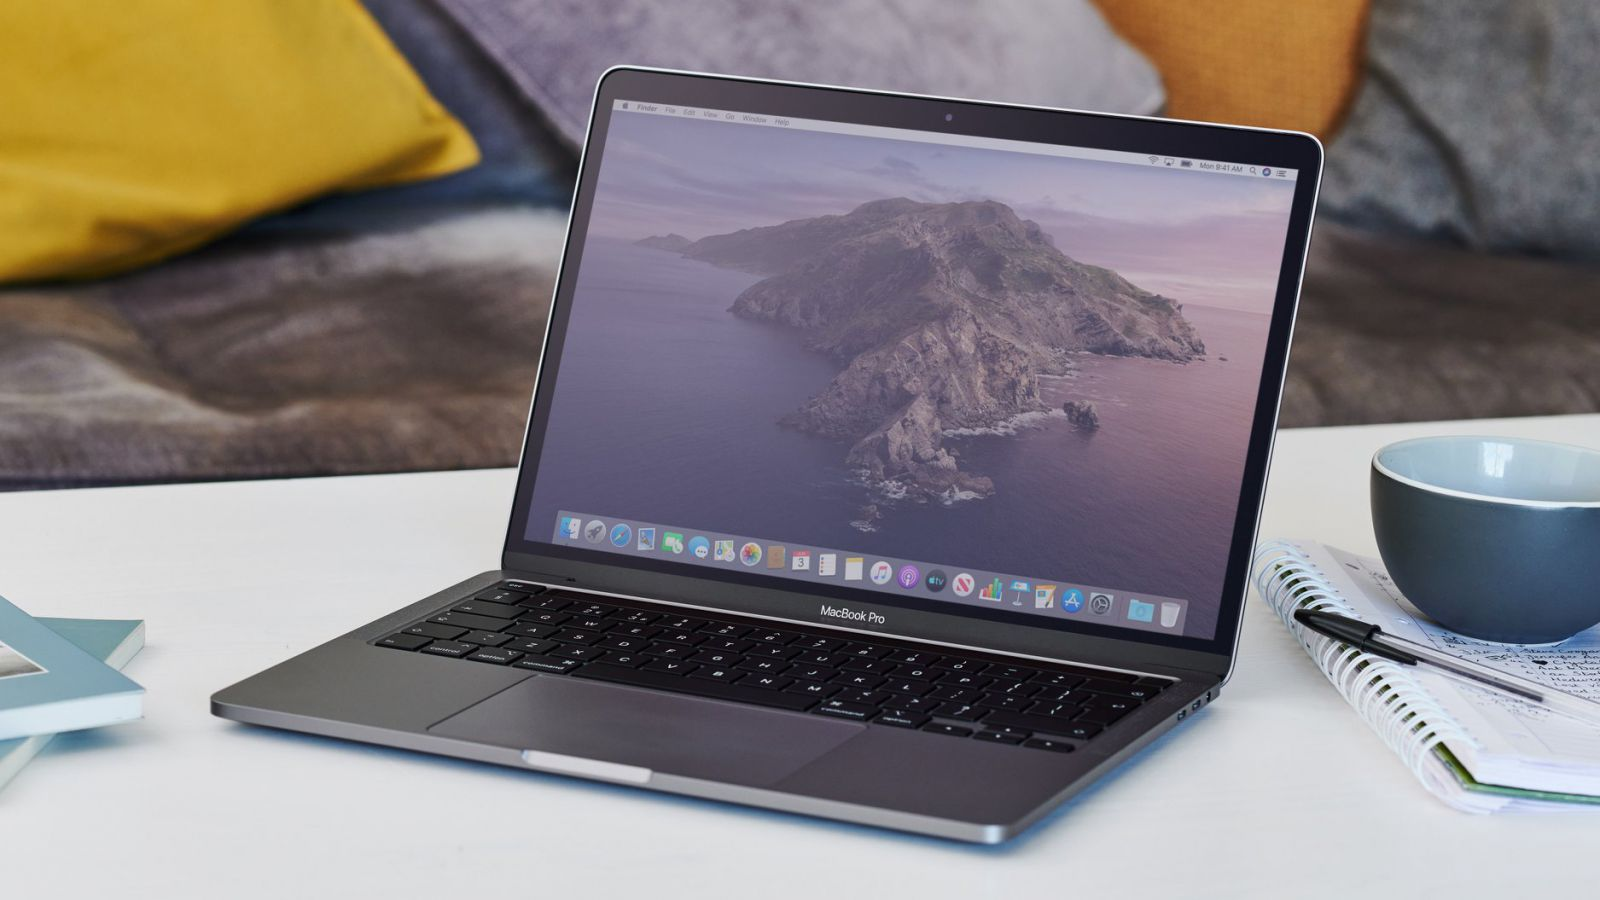 MacBook Pro M1 2020 sở hữu hiệu năng mạnh mẽ đáng kinh ngạc so với các thế hệ tiền nhiệm